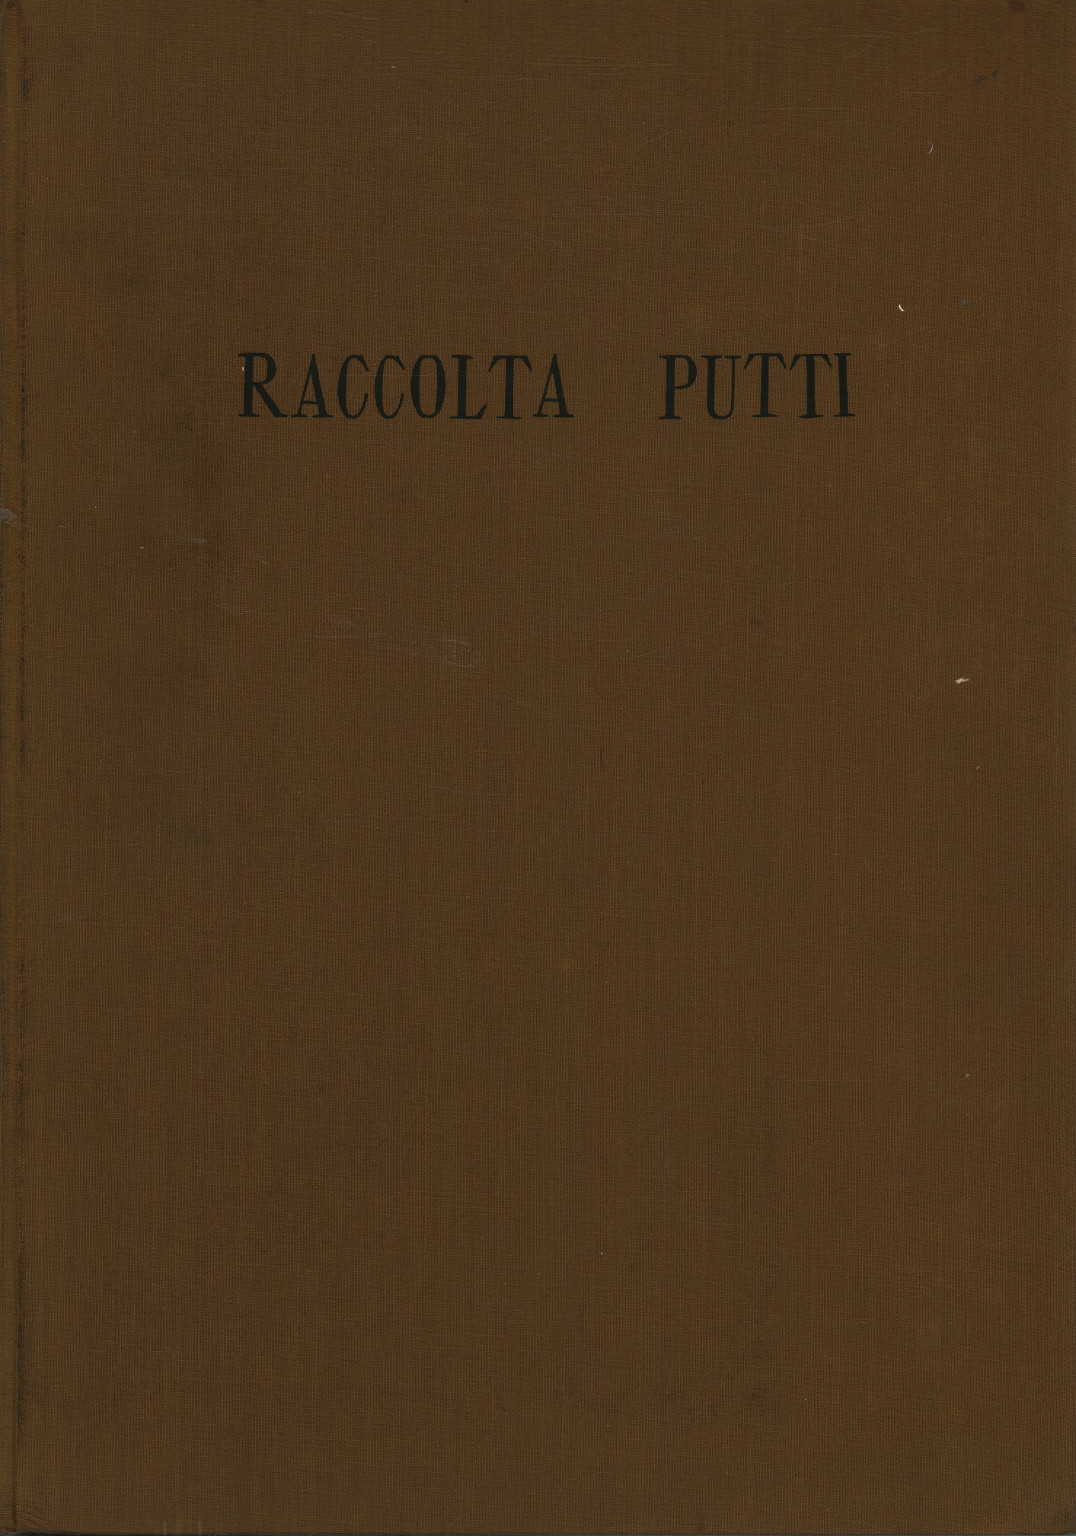 Catalogue de la collection Vittorio Putti, s.a.